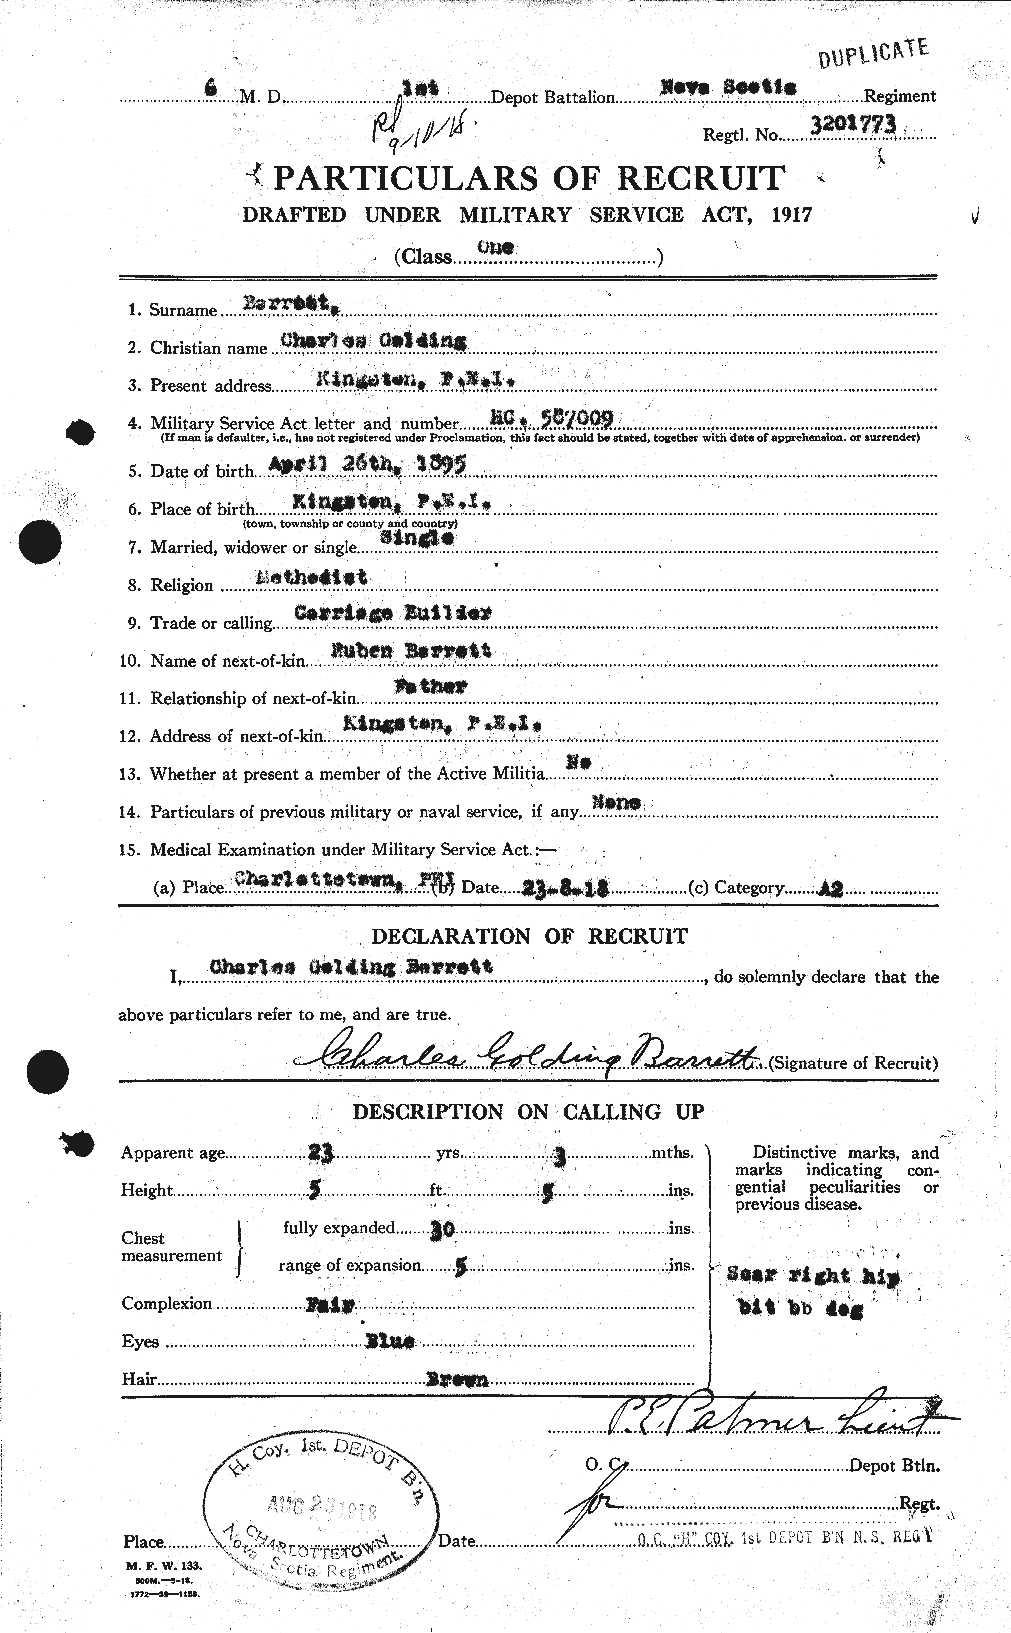 Dossiers du Personnel de la Première Guerre mondiale - CEC 222227a